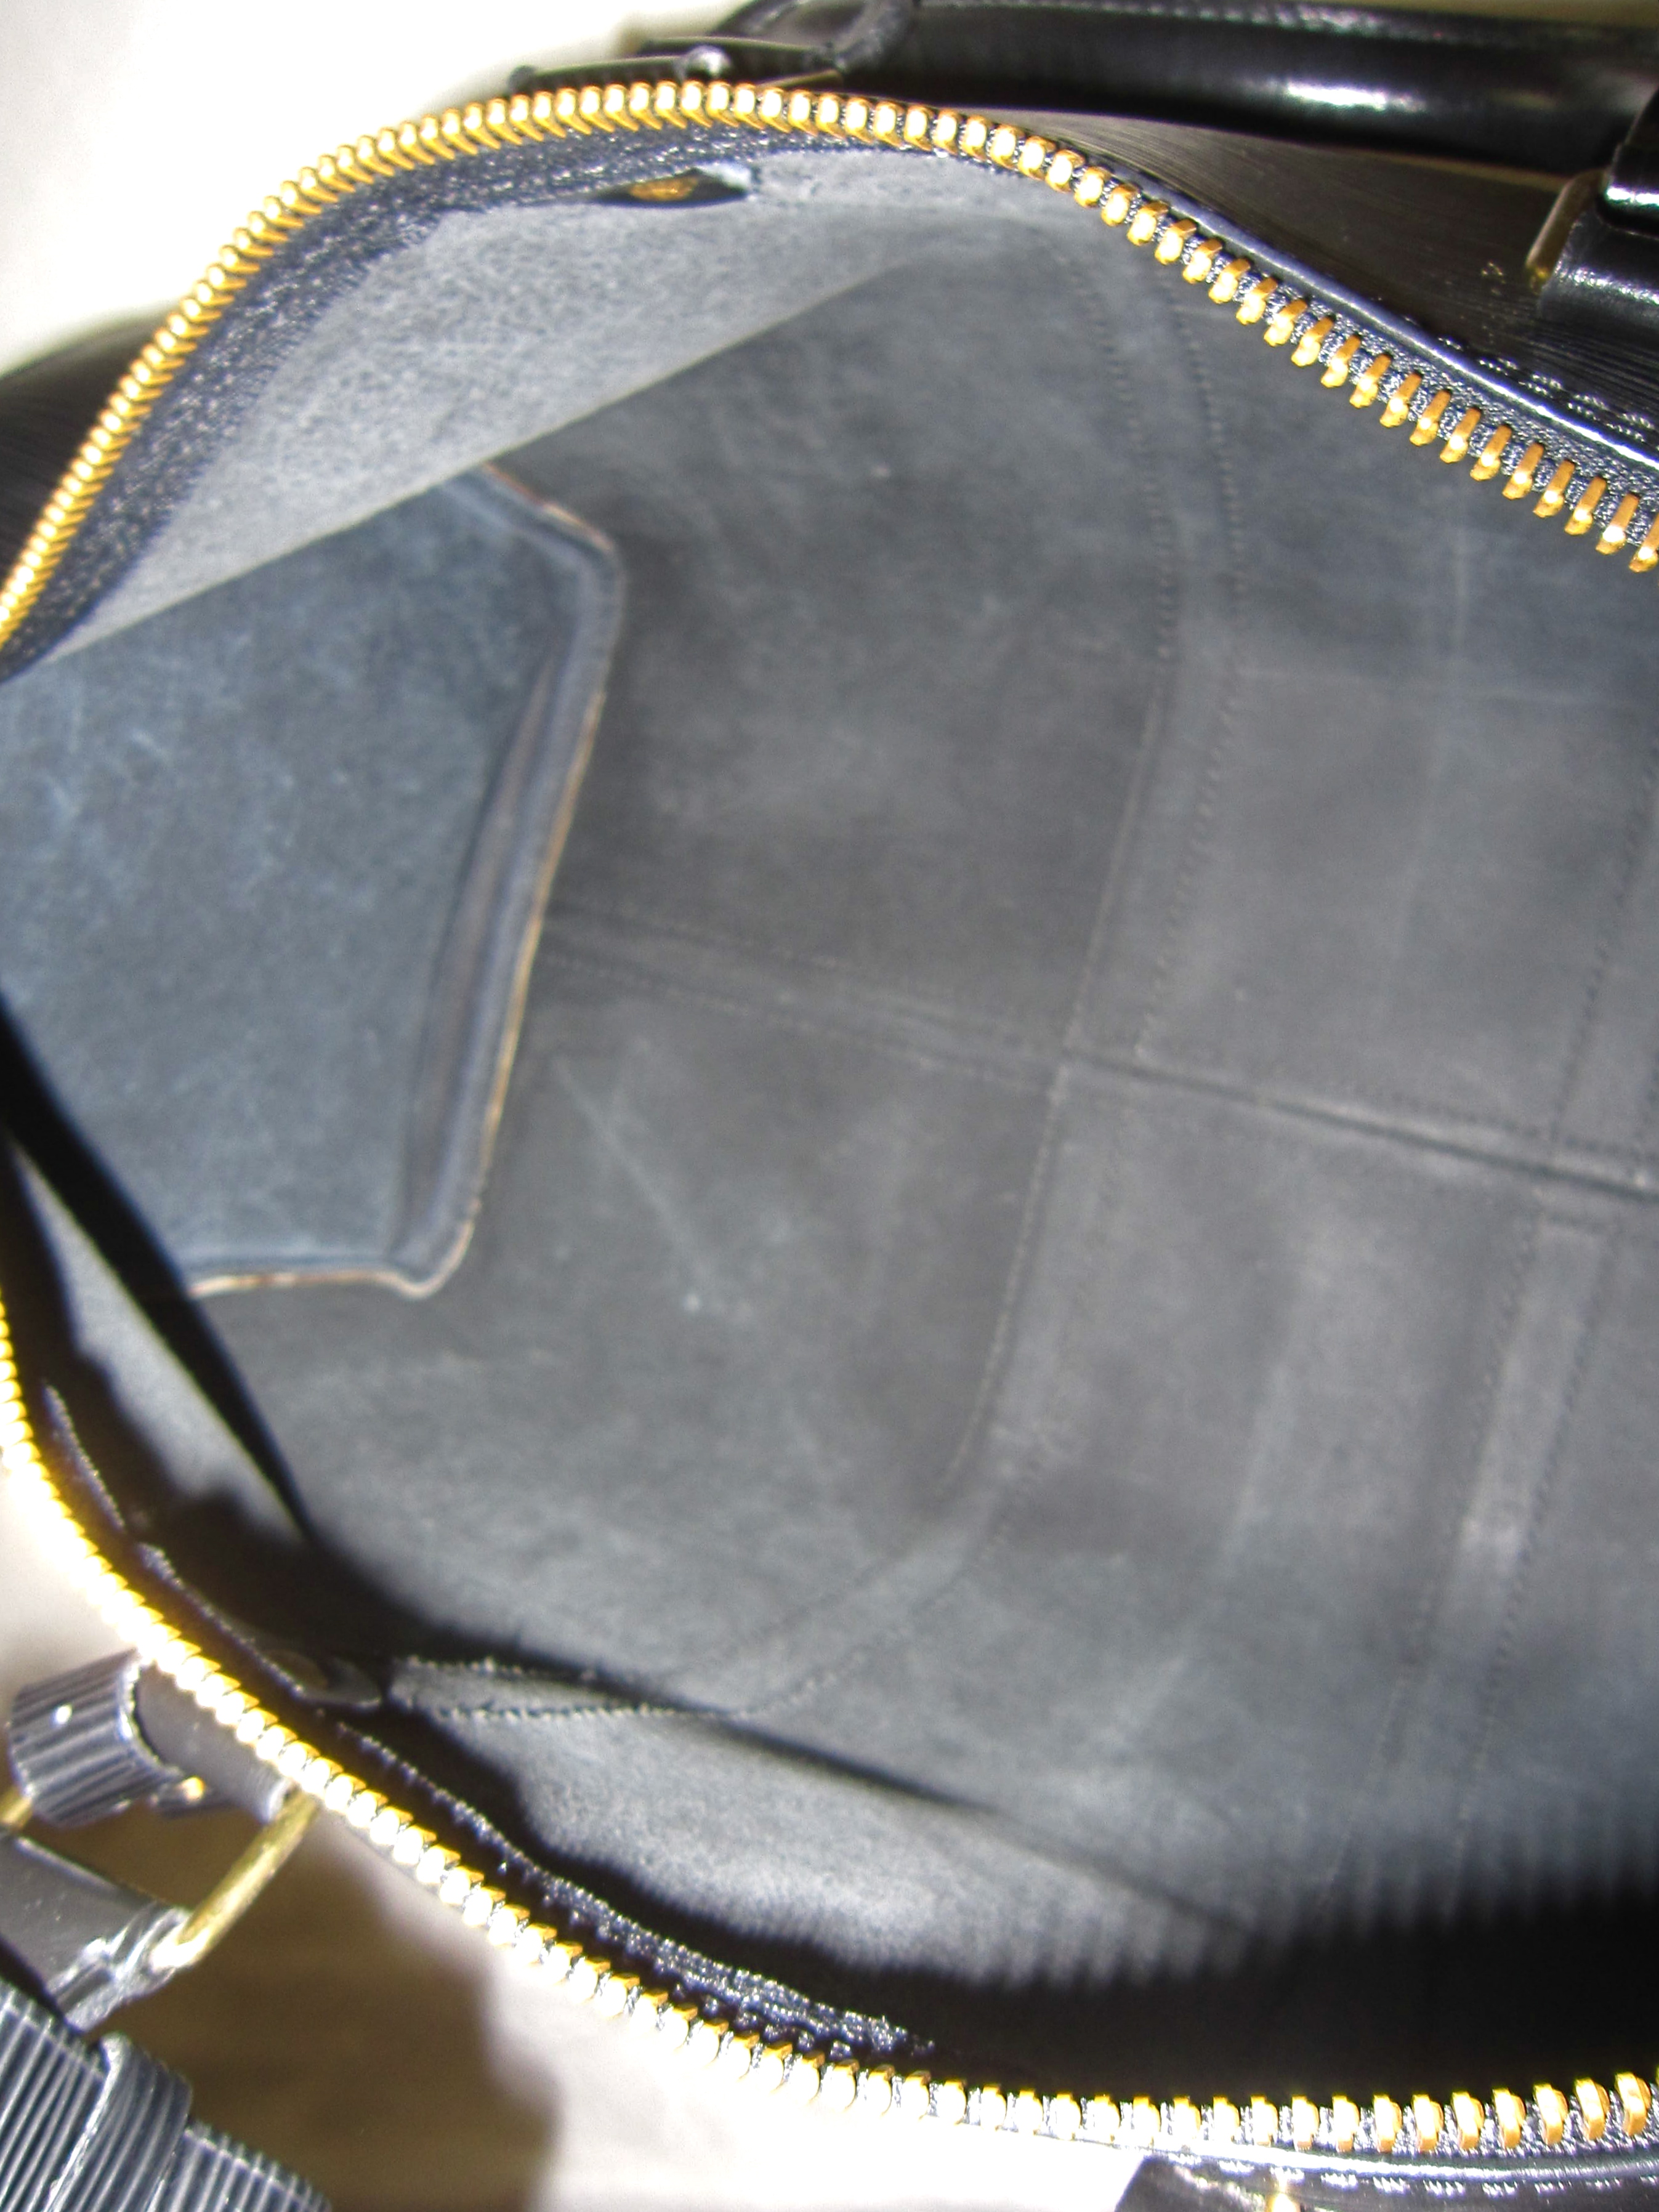 Louis Vuitton 2000s Black Epi Leather Duffle Bag · INTO